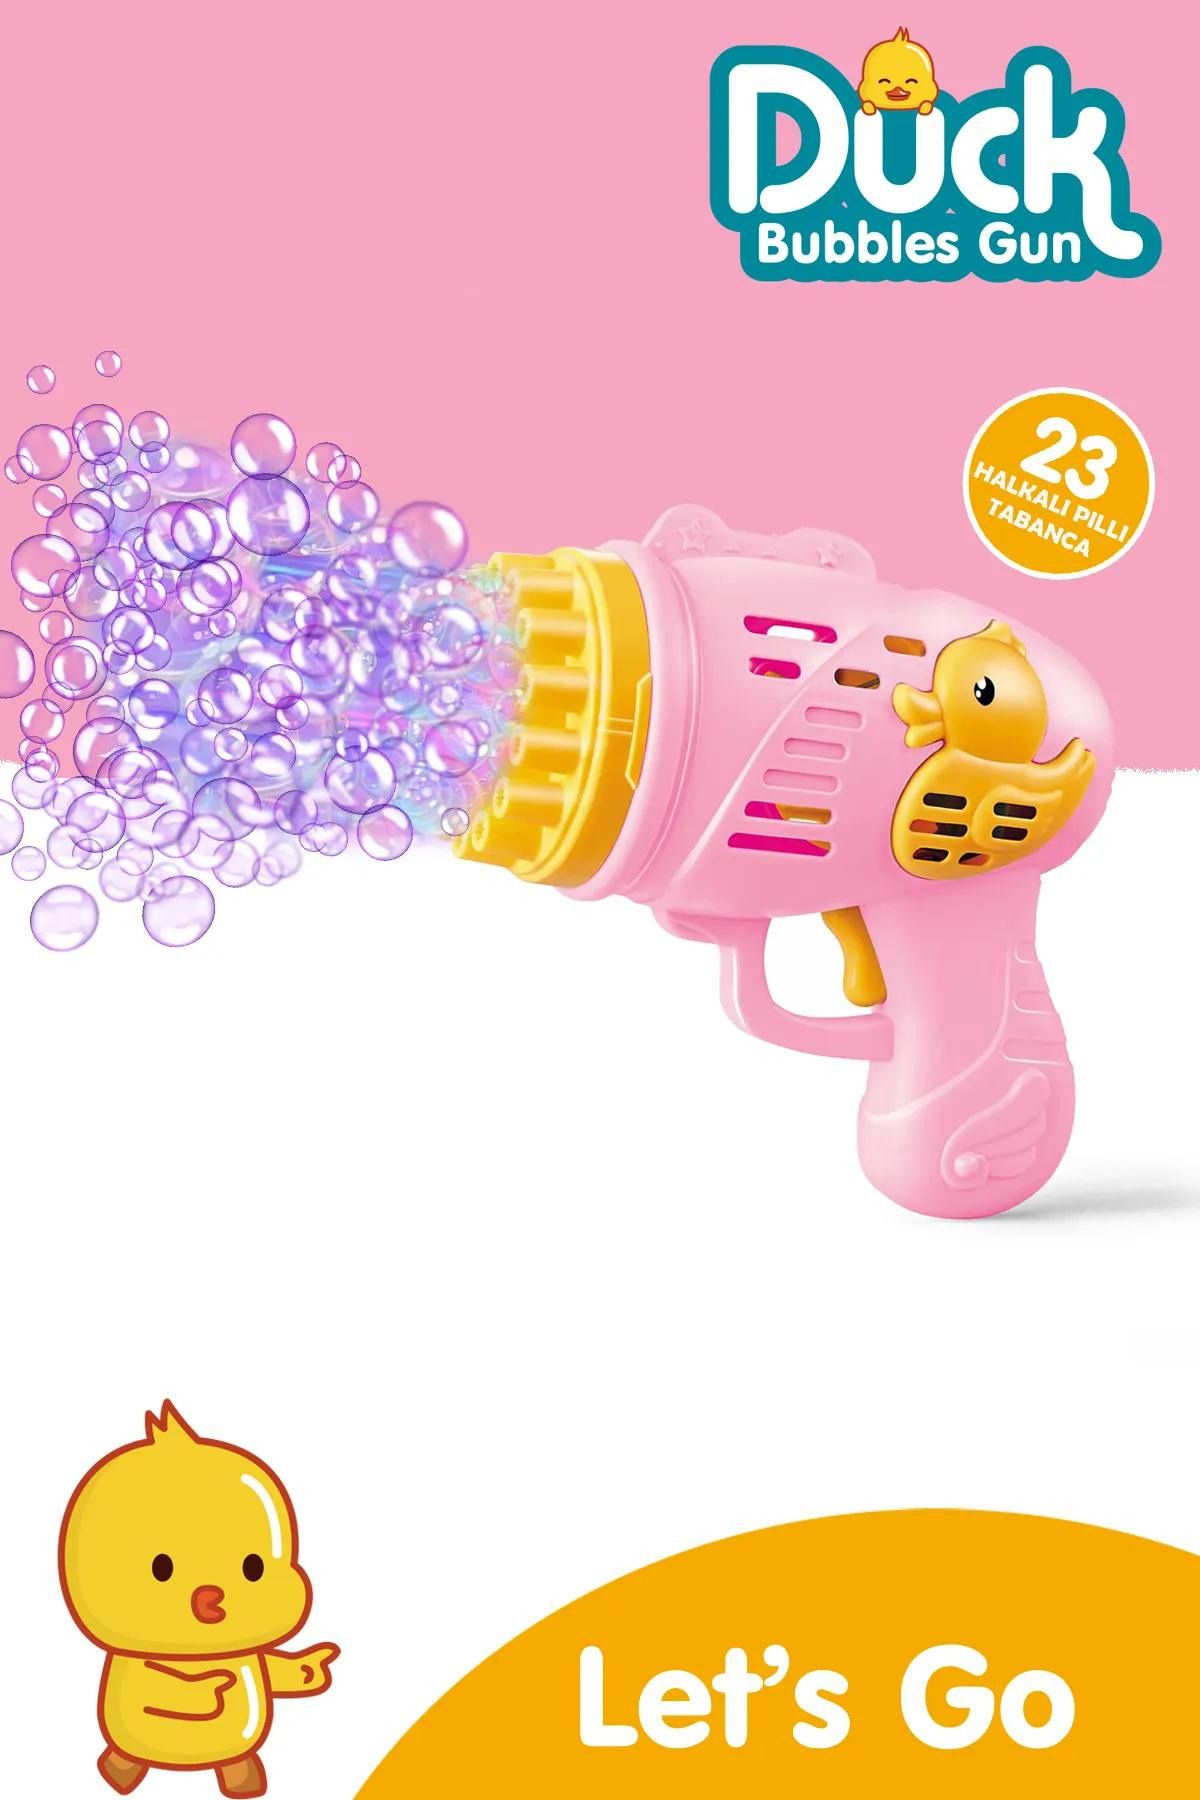 welcomein Oyuncak Duck Çok Delikli Pilli Köpük Atan Tabanca Oyuncağı 23 Delikli Bubble Gun